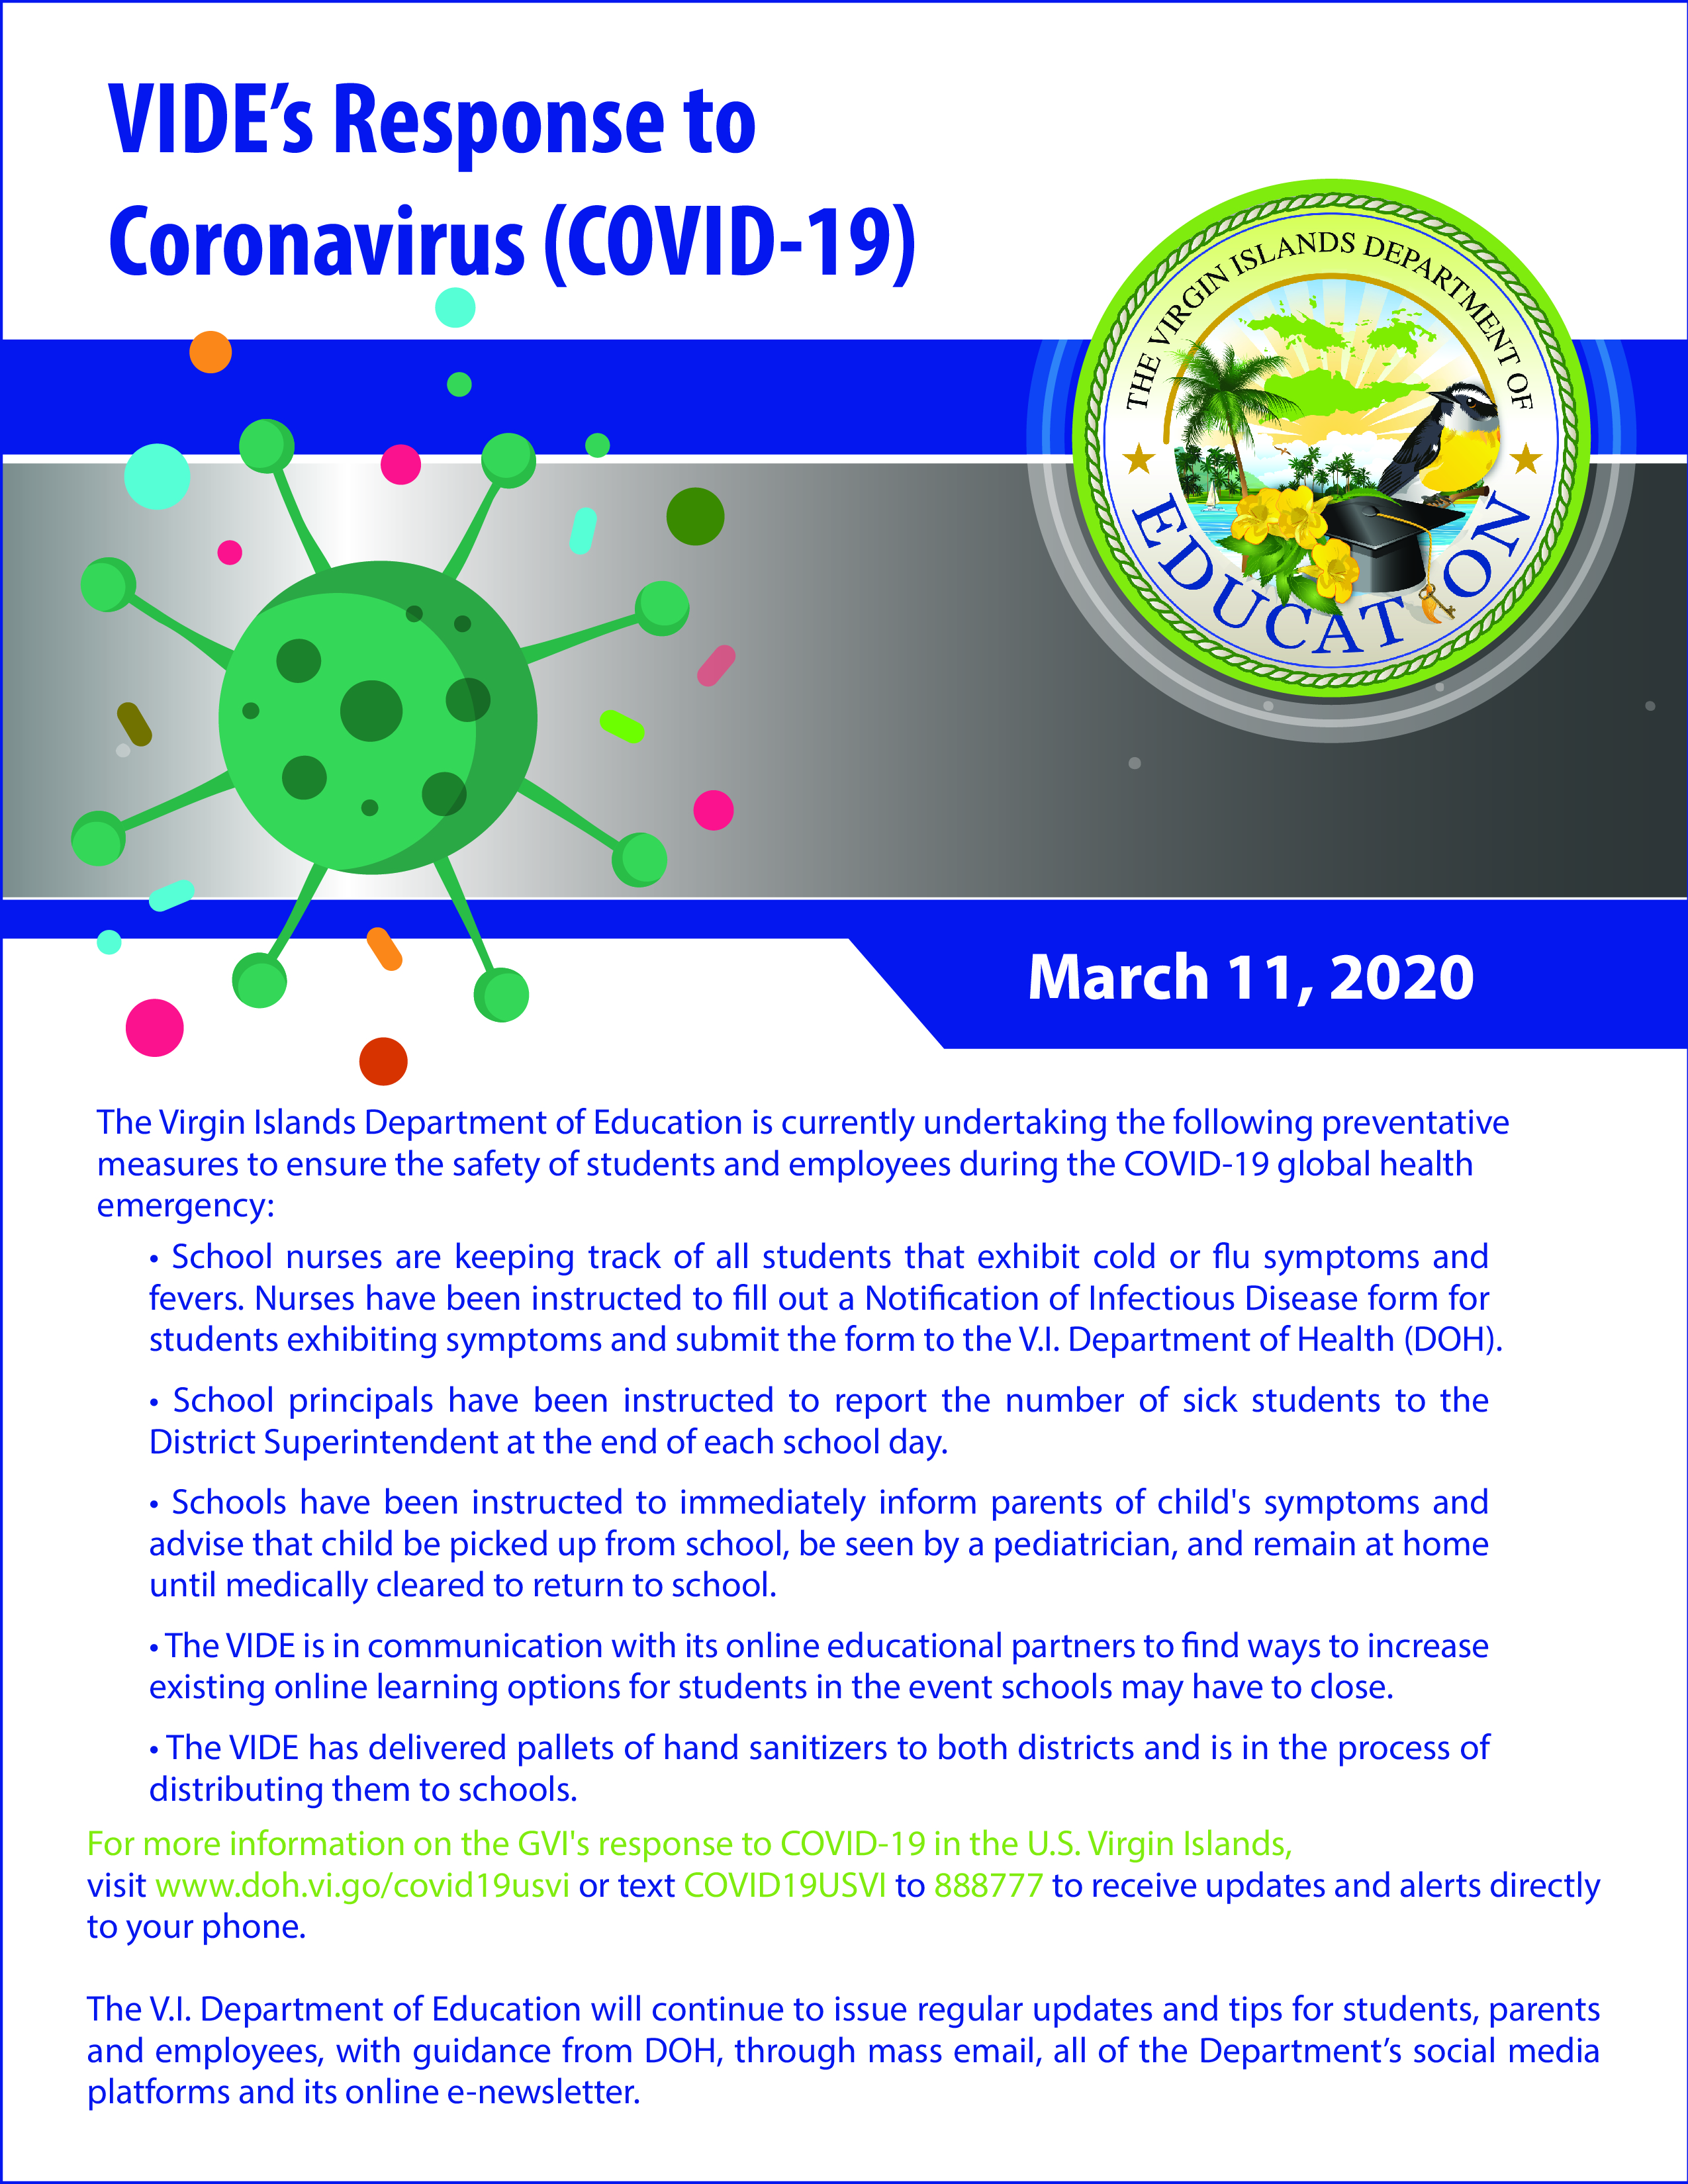 VIDE's Response to Coronavirus (COVID-19)-01.jpg